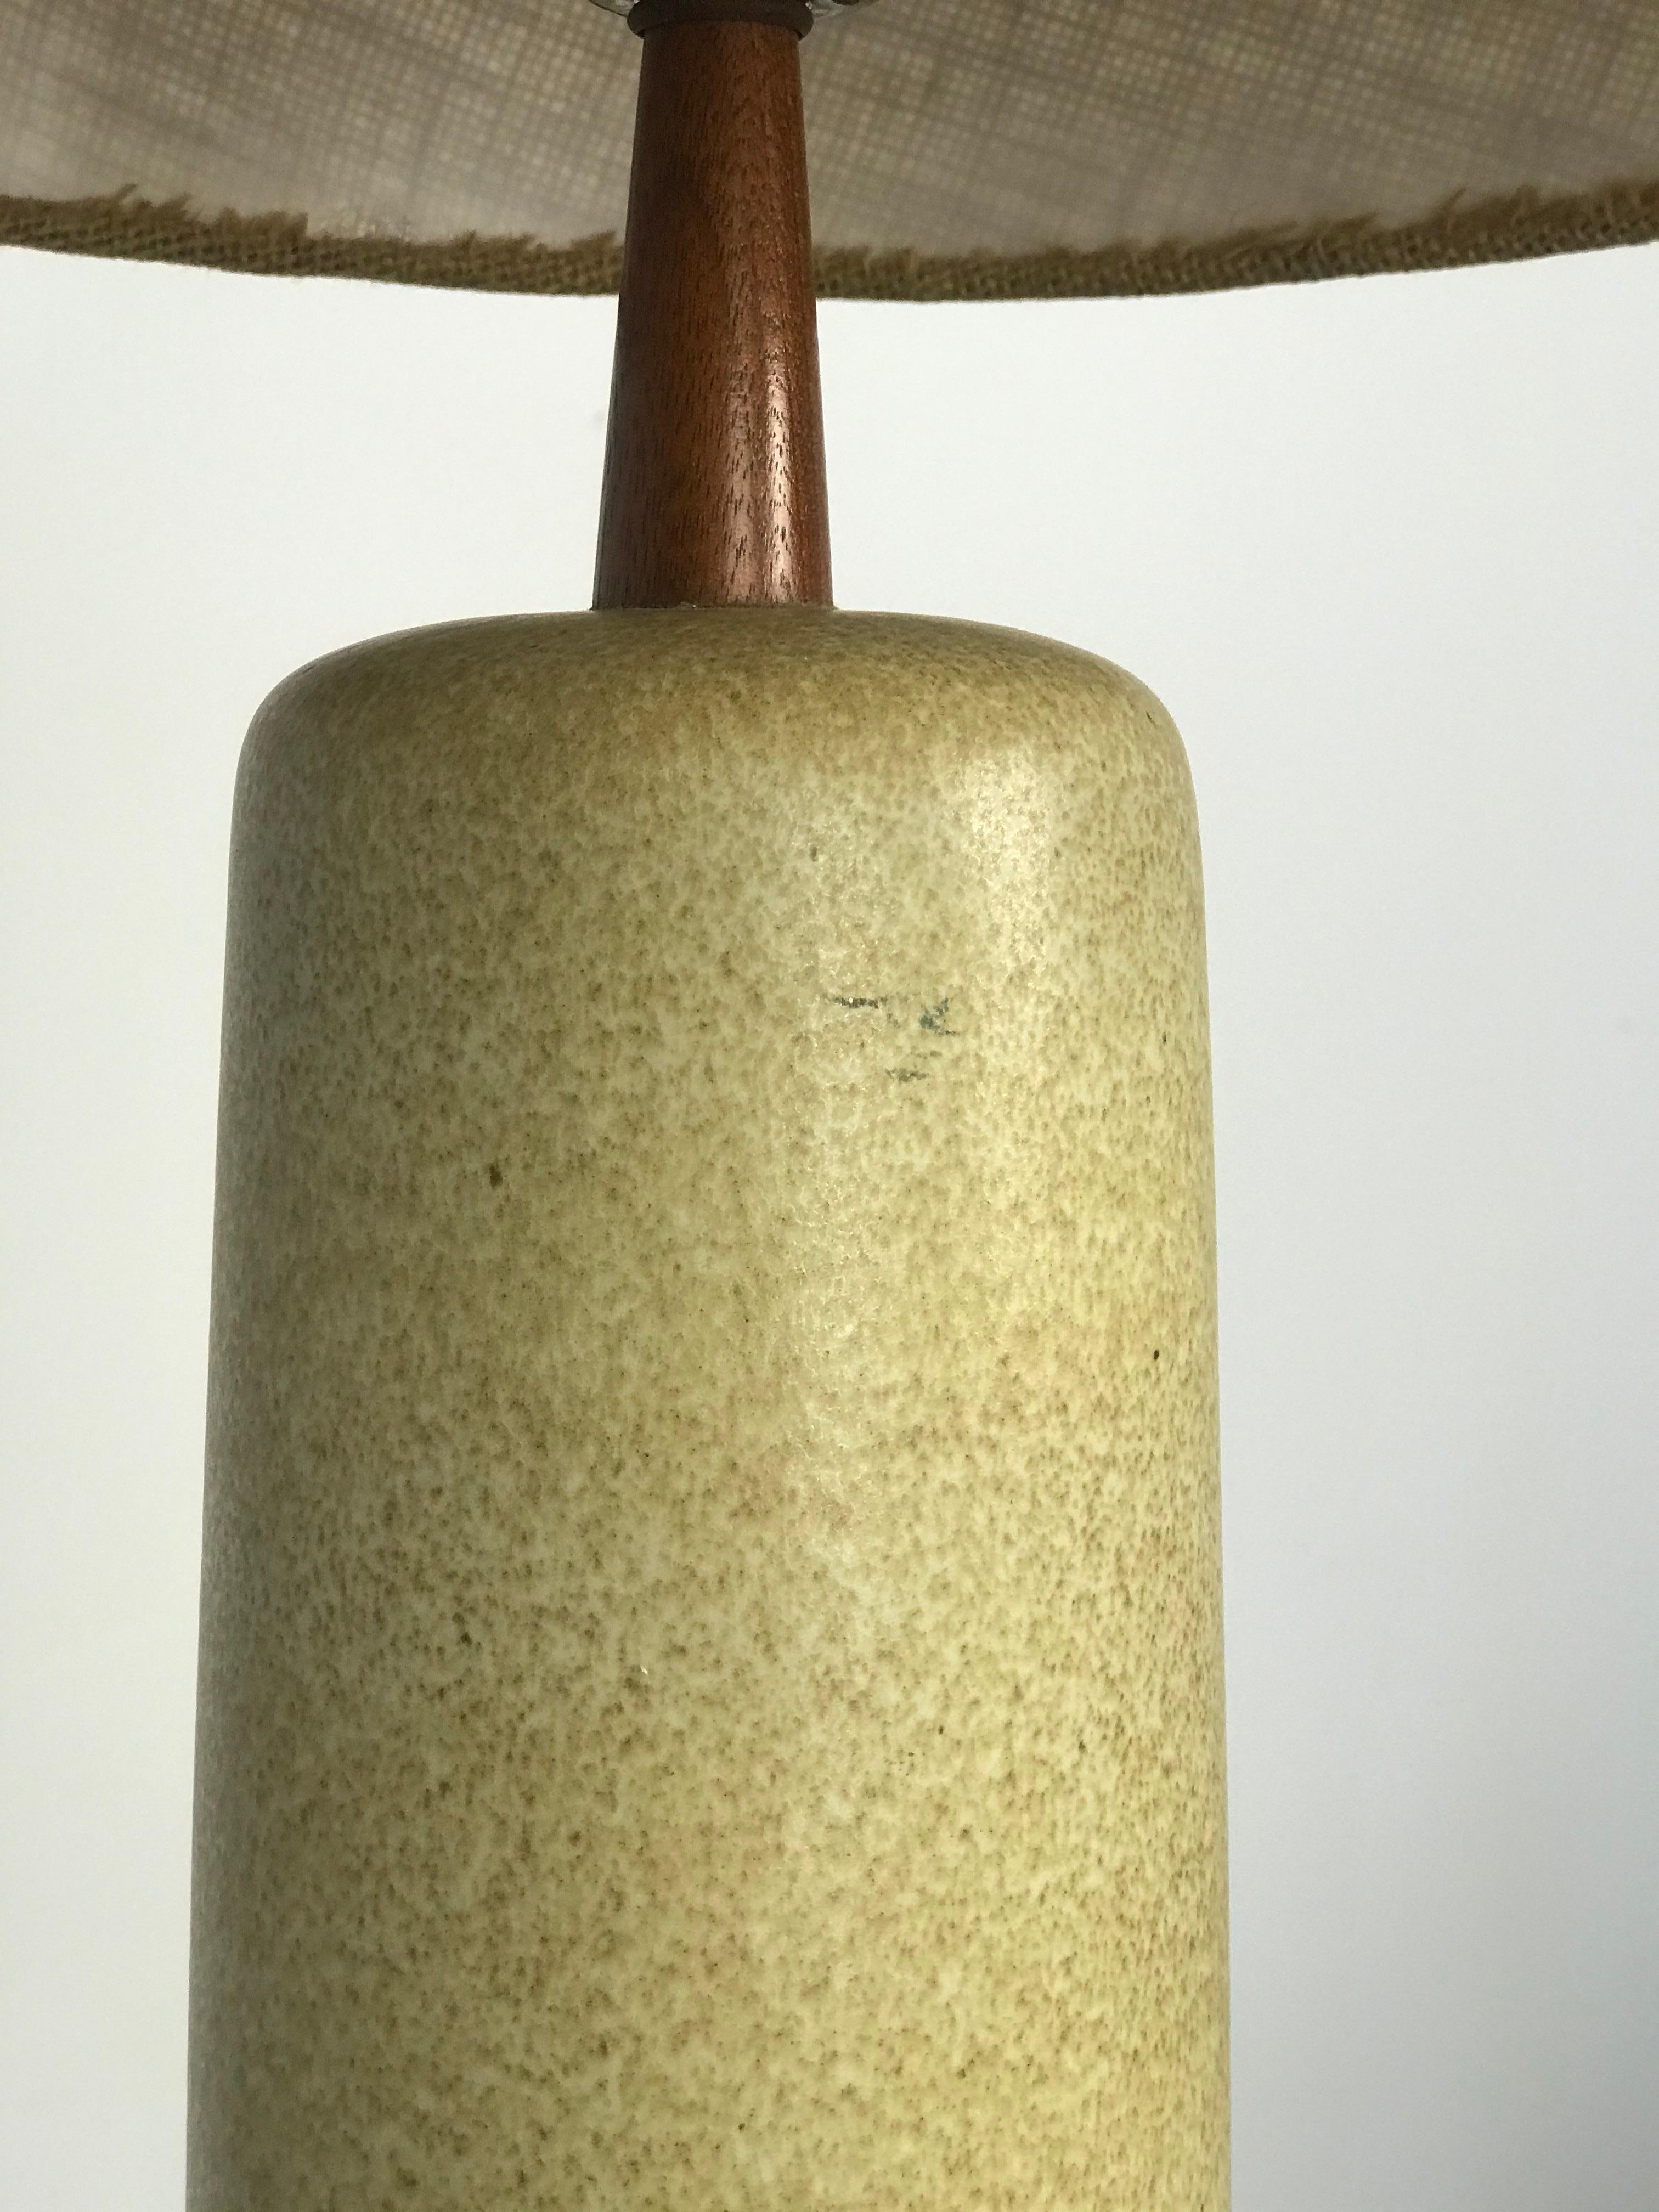 American Jane & Gordon Martz Ceramic Signed Modernist Lamp for Marshall Studios